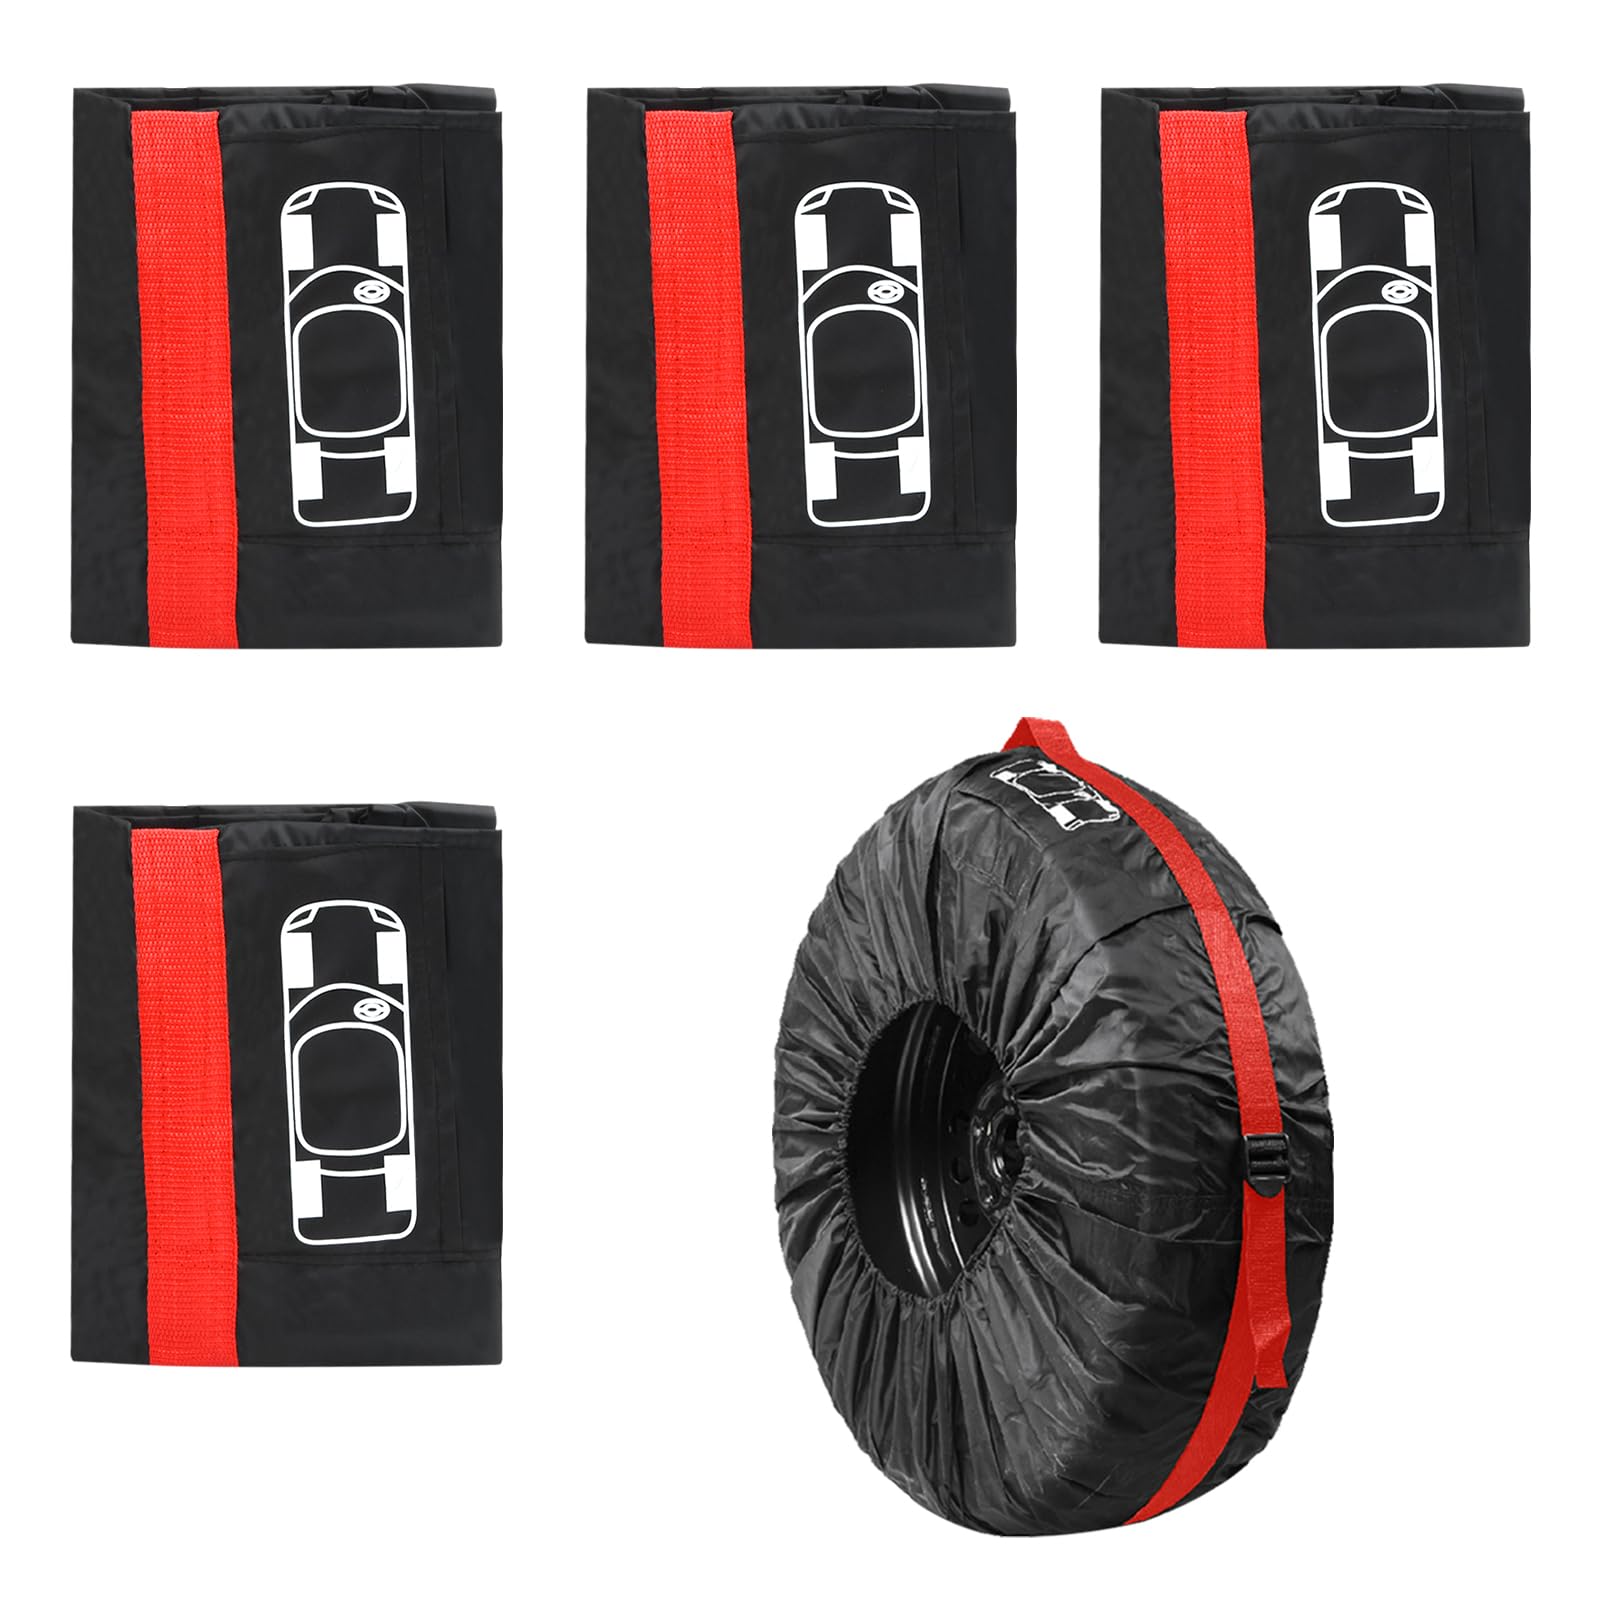 Rundago Reifentaschen Set, Reifenschutzhülle für 4 Reifen, Auto Reifentasche Waterproof Staubdicht, Reifentüten für Reifen 19-23 Zoll, Reifensäcke Waschbar (Rot + Schwarz) von Rundago